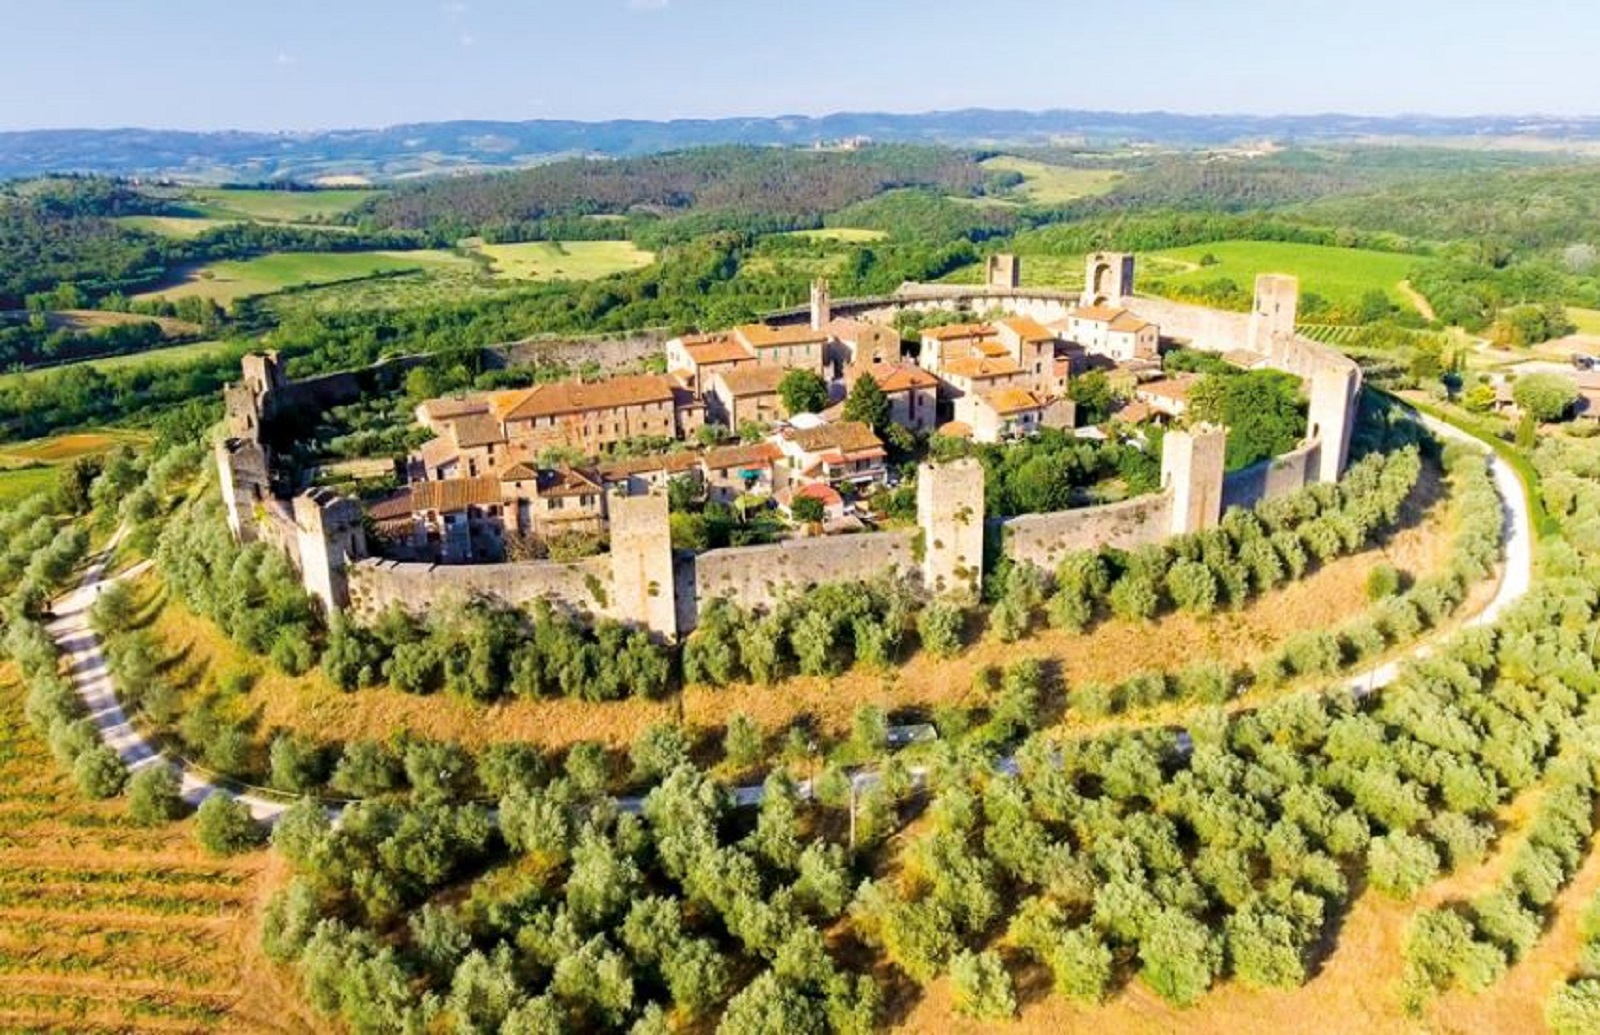 El tour de Chianti te permitirá descubrir los pueblos más característicos de esta parte de la Toscana